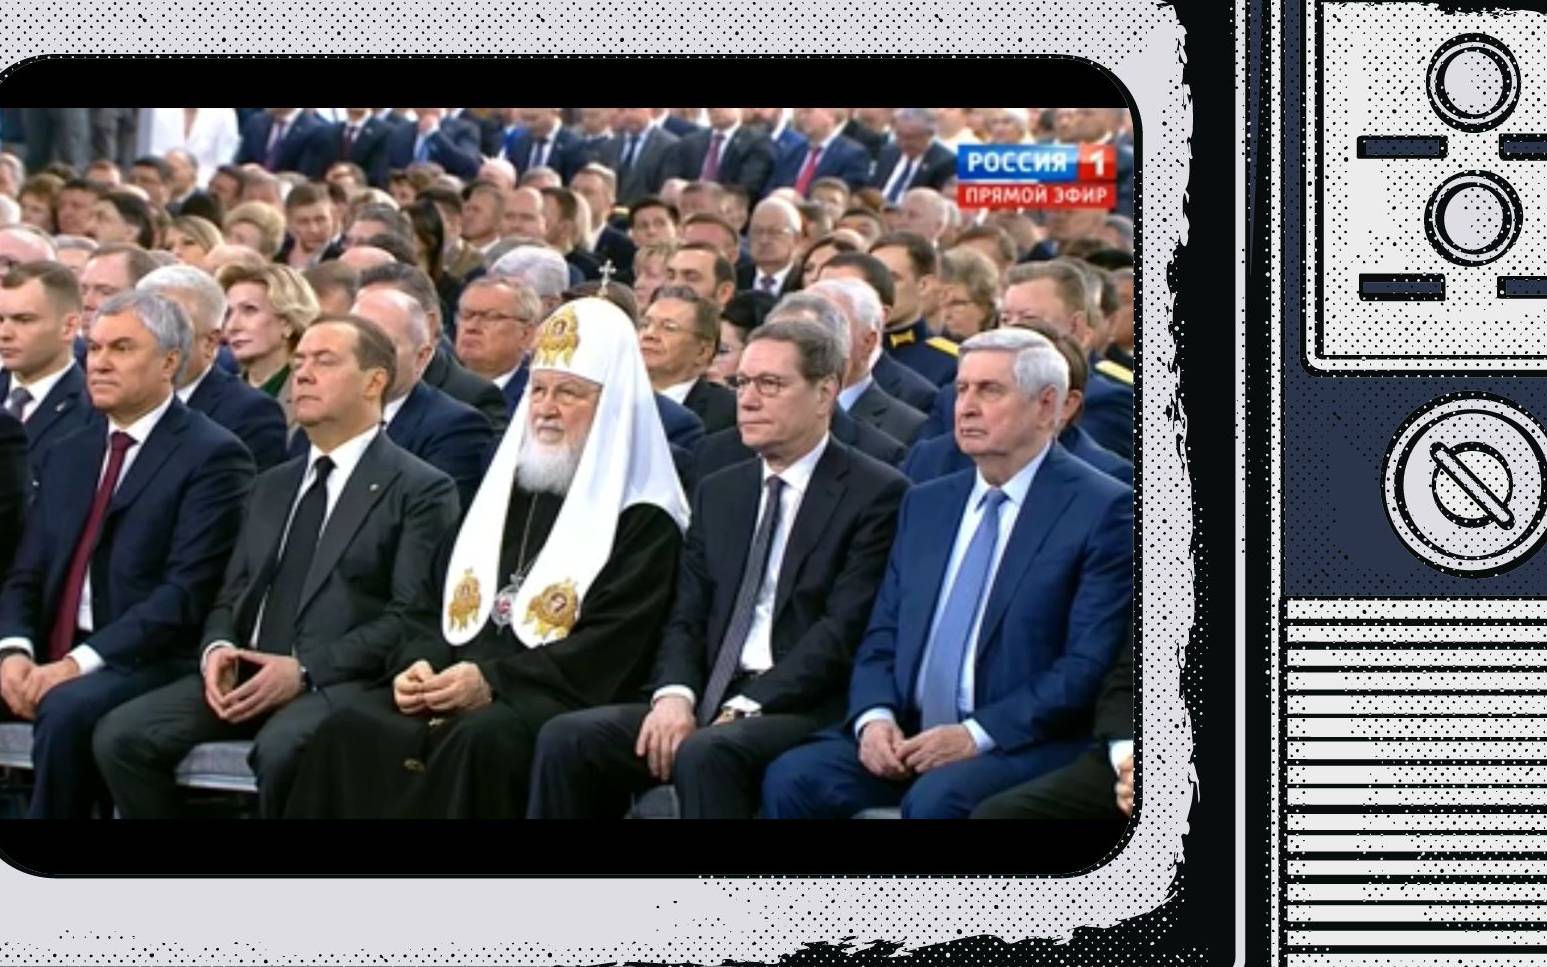 Grafika: w ekran starego telewizora wklejone zdjęcie dostojników z popem w pierwszym rzędzie słuchających Putina